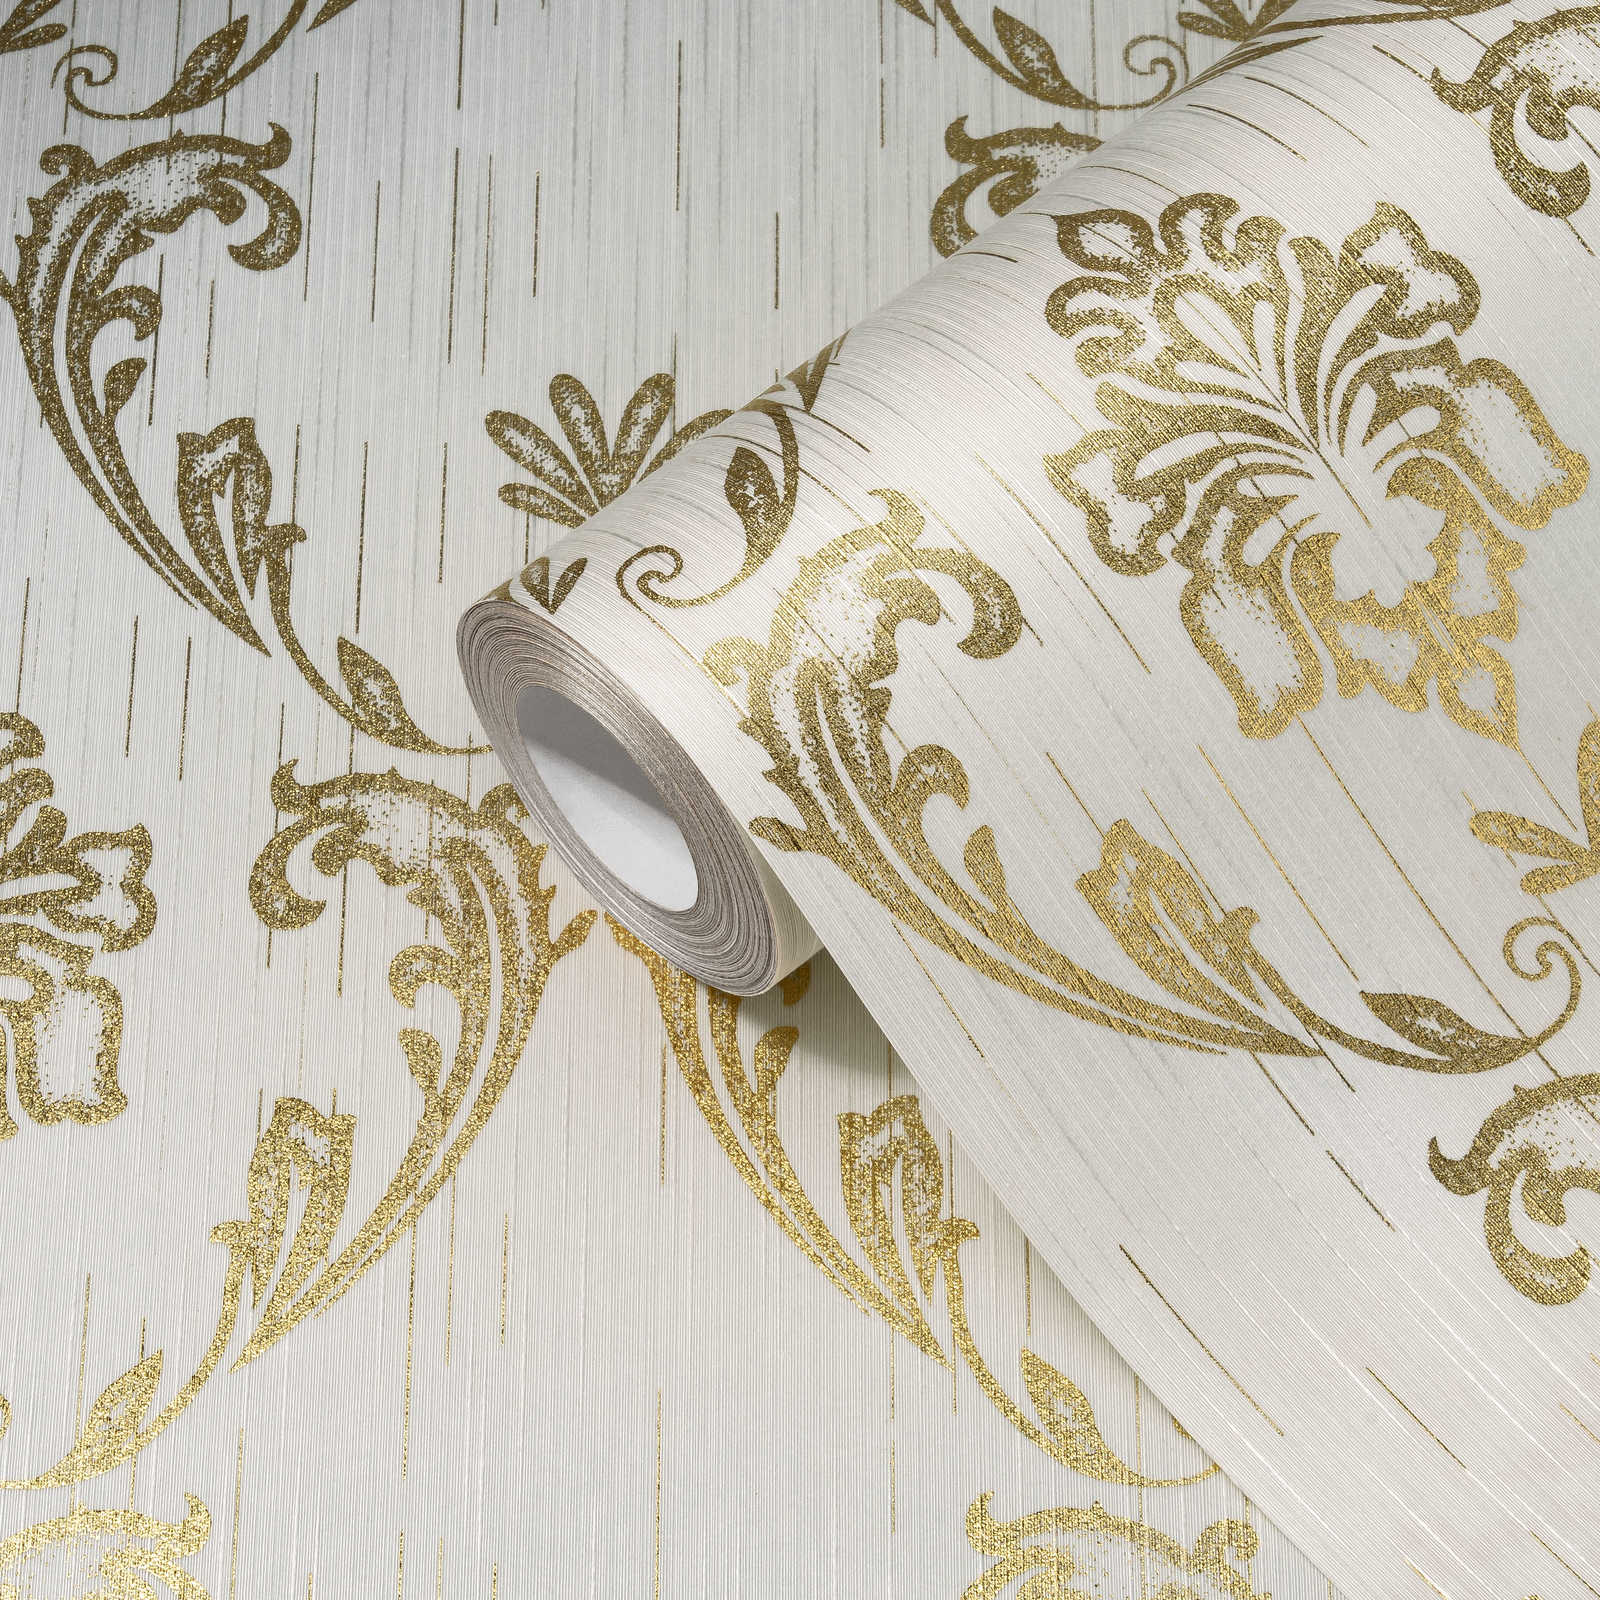             Papel pintado ornamental con elementos florales en oro - oro, blanco
        